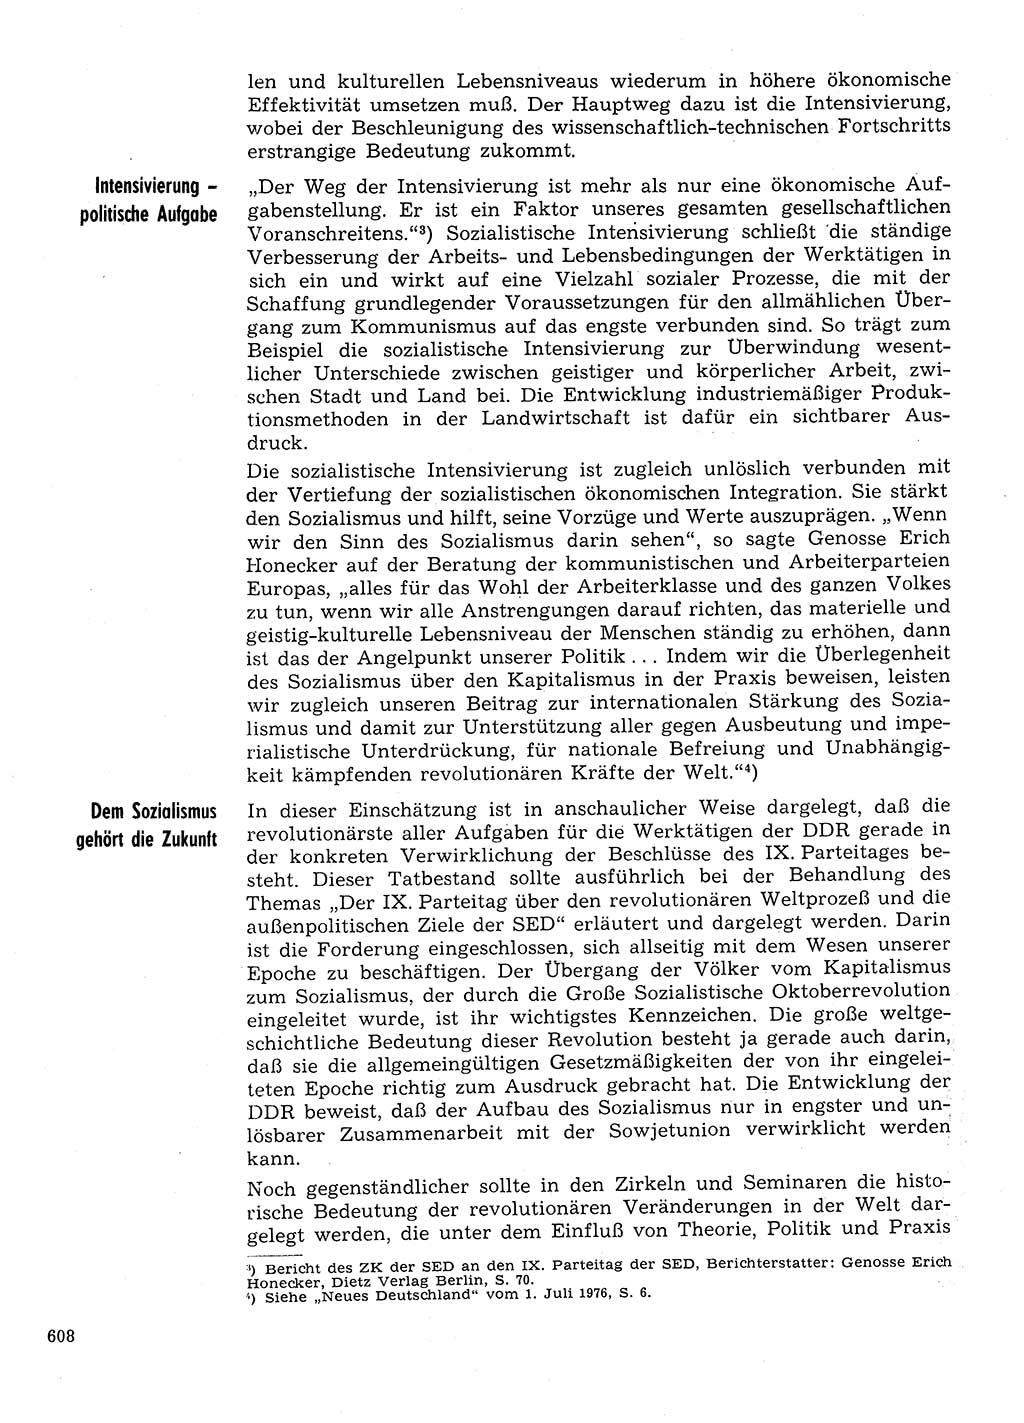 Neuer Weg (NW), Organ des Zentralkomitees (ZK) der SED (Sozialistische Einheitspartei Deutschlands) für Fragen des Parteilebens, 31. Jahrgang [Deutsche Demokratische Republik (DDR)] 1976, Seite 608 (NW ZK SED DDR 1976, S. 608)